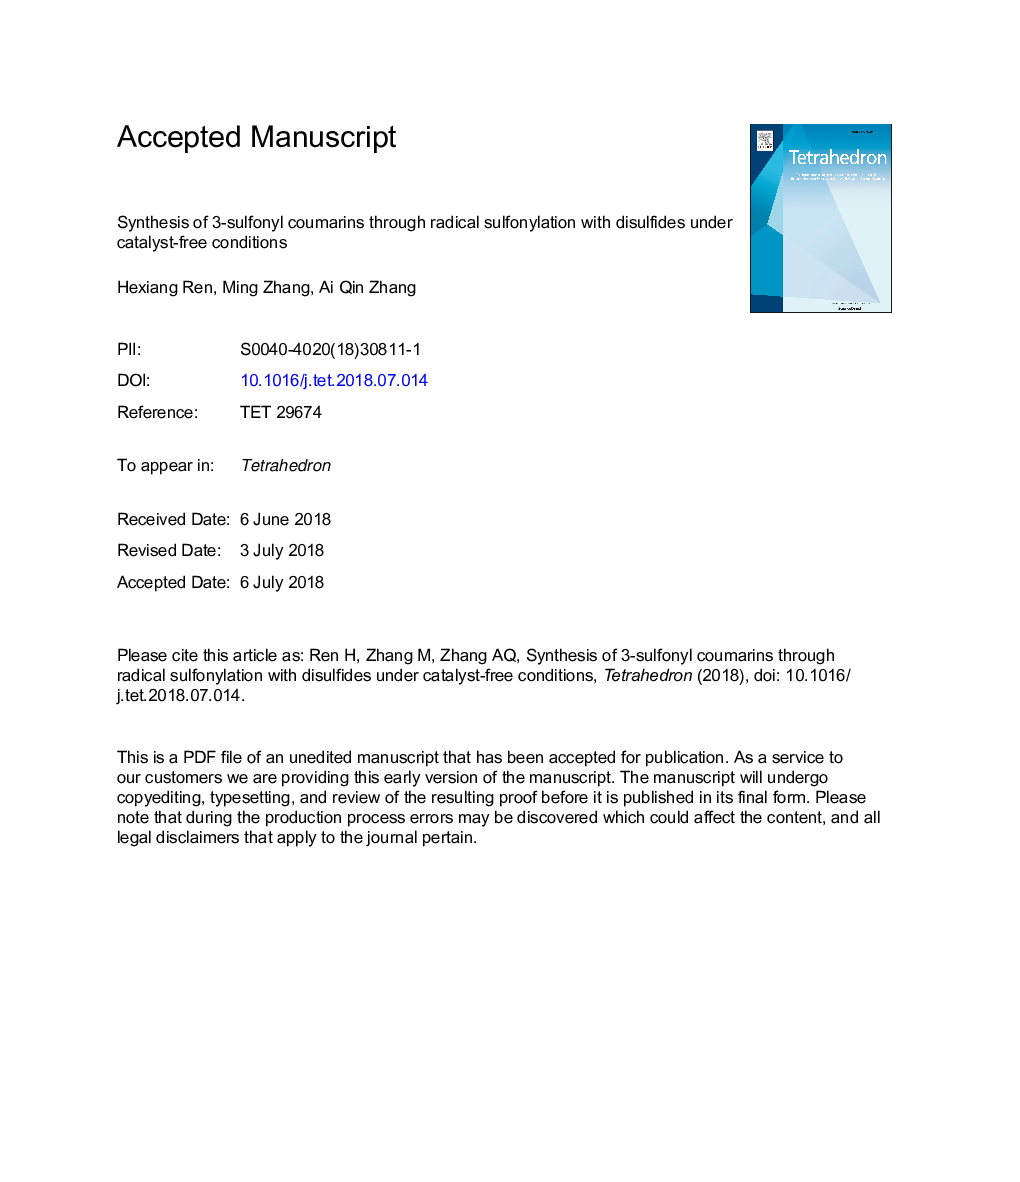 سنتز 3-سولفونیل کومارین ها از طریق سولفونیزاسیون رادیکال با دی سولفید ها در شرایط بدون کاتالیزور 